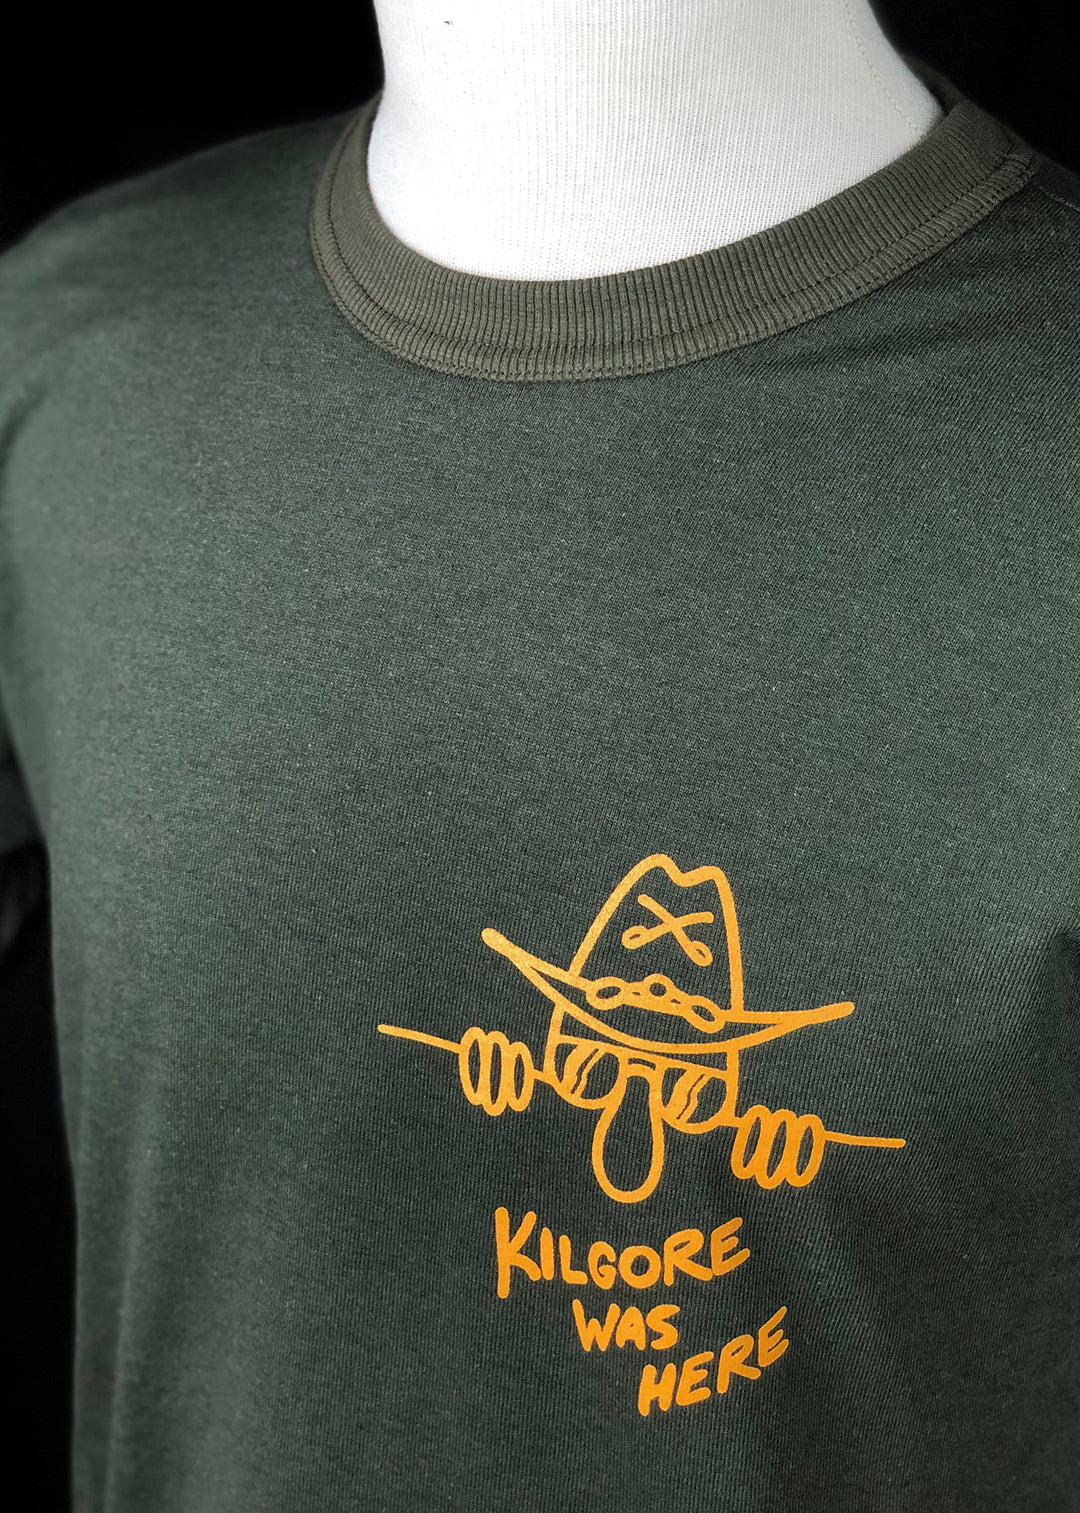 T-shirt. Kilgore